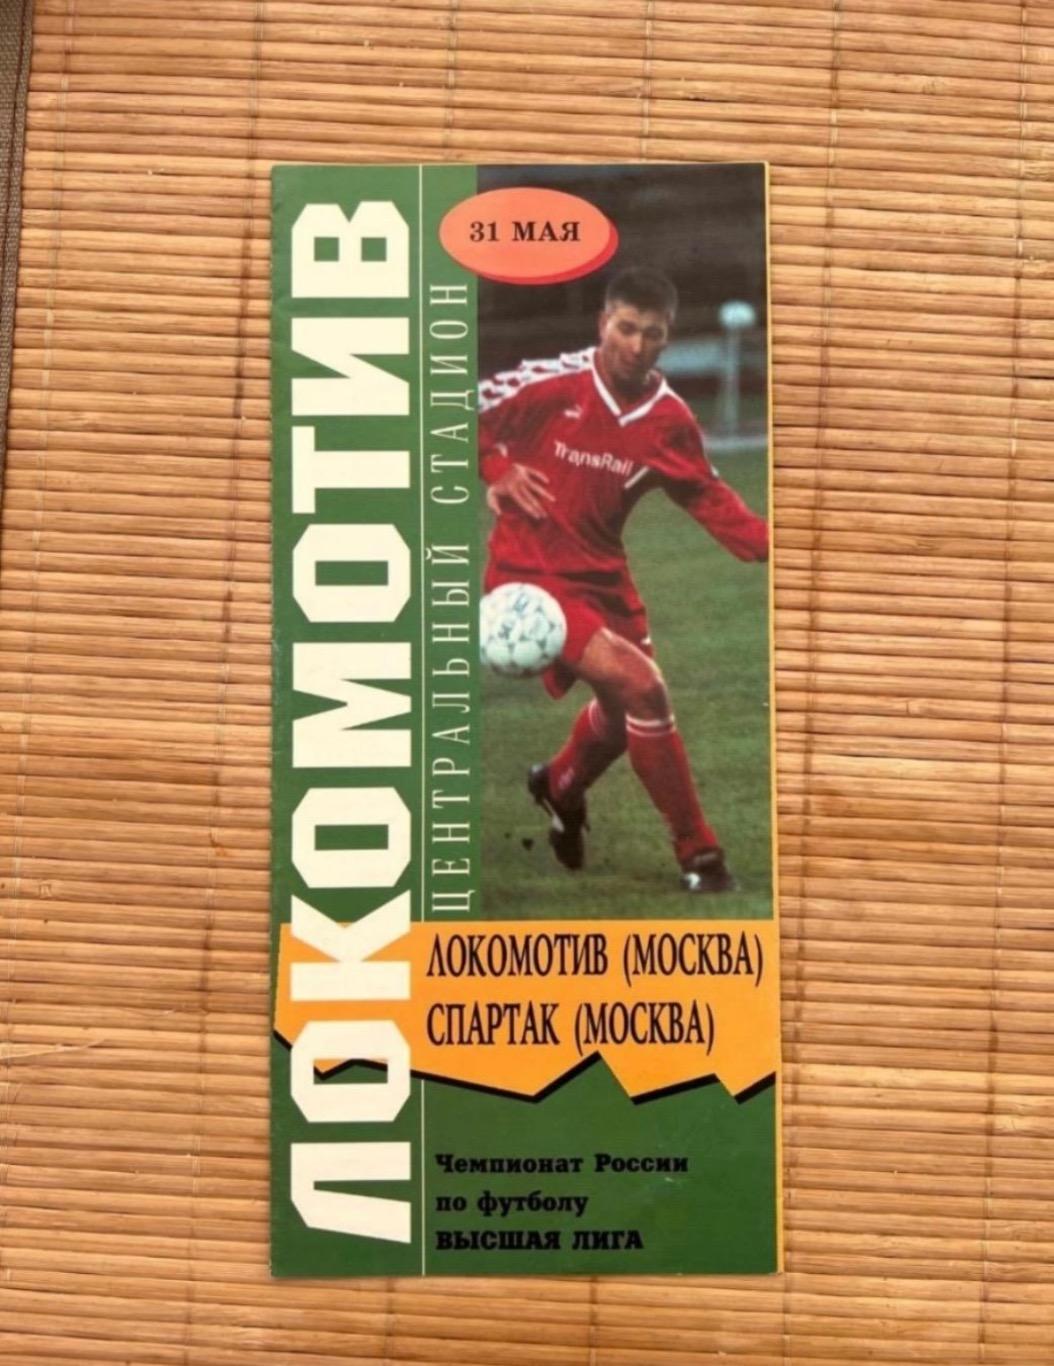 Локомотив Москва - Спартак Москва 31.05.1997